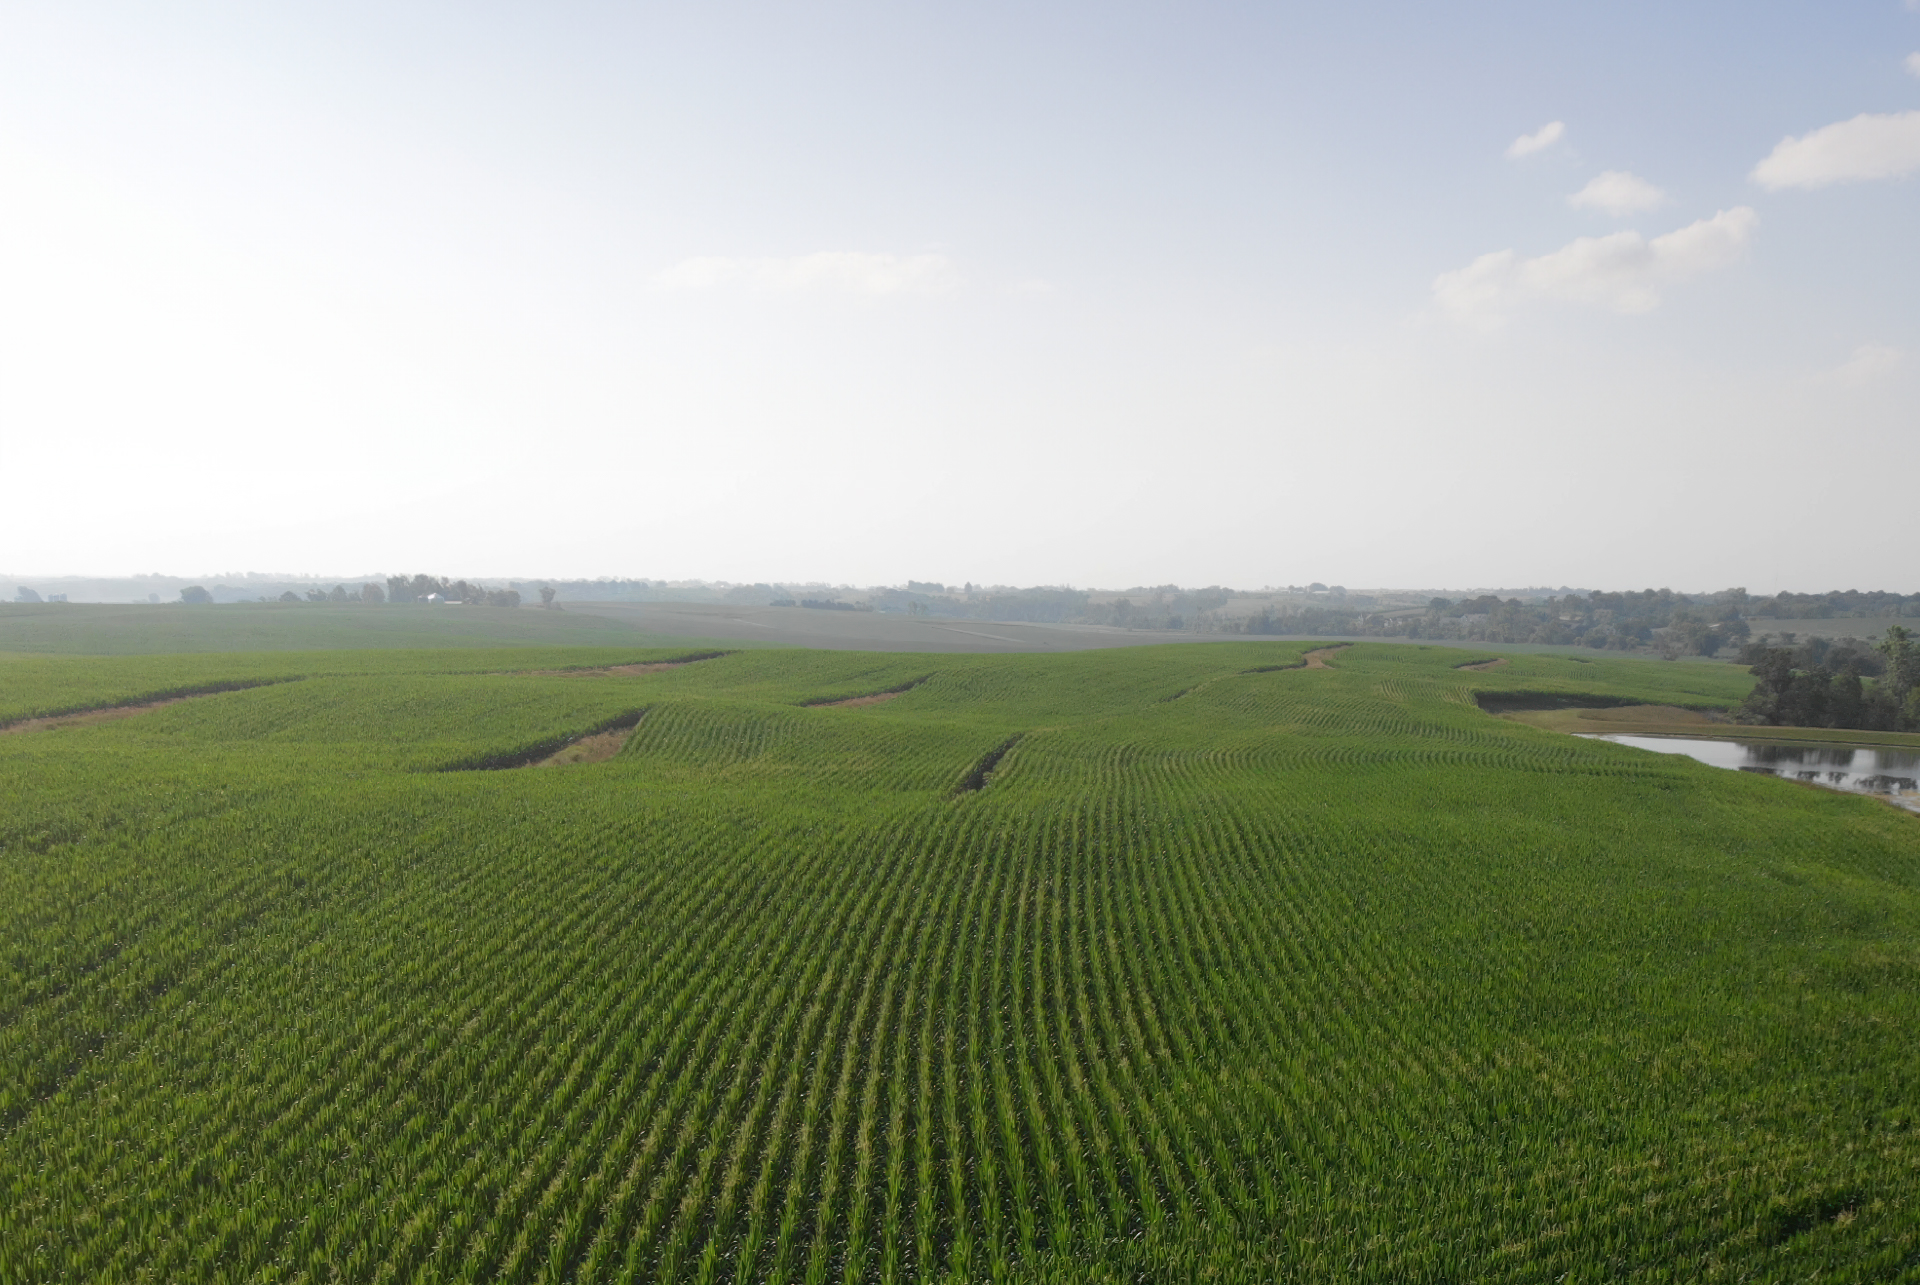 Rolling fields with green corn mid-season